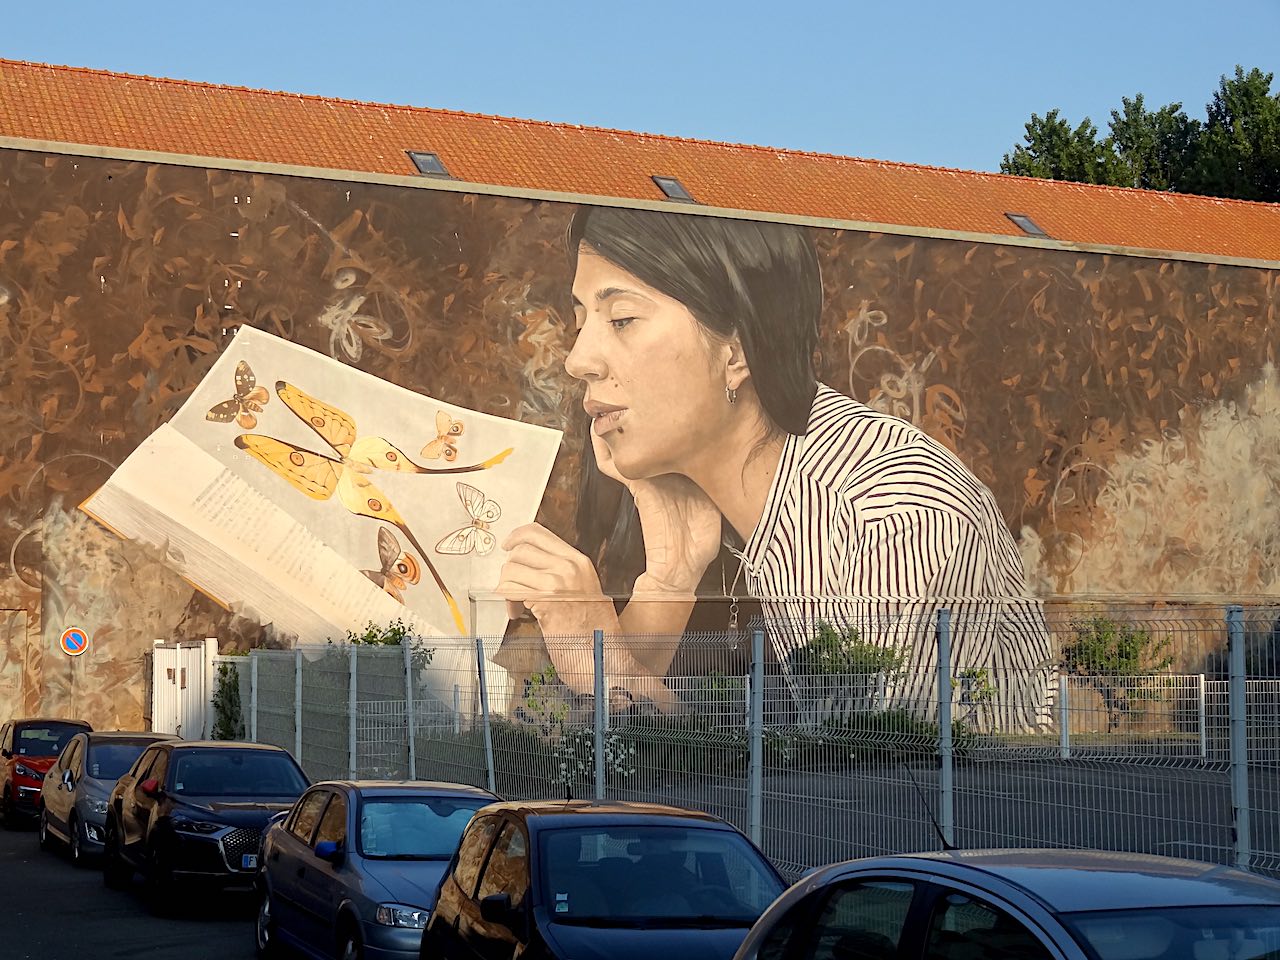 street art Bologne-sur-Mer 